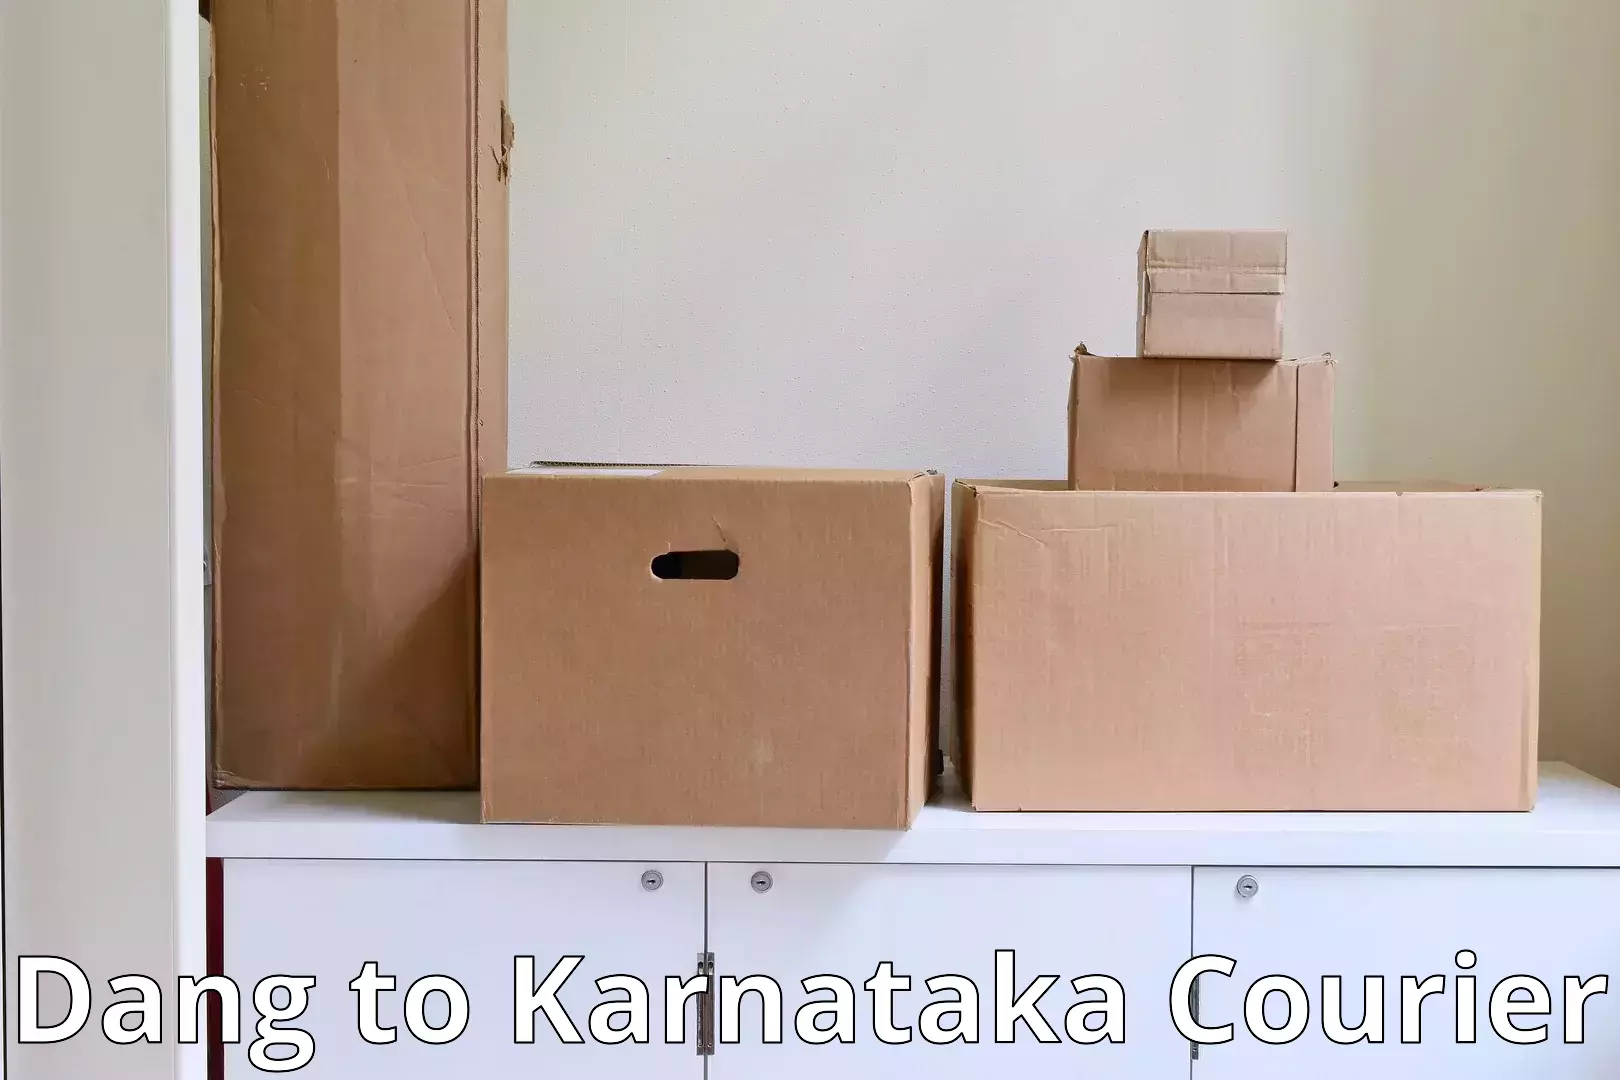 Professional goods transport Dang to Karnataka